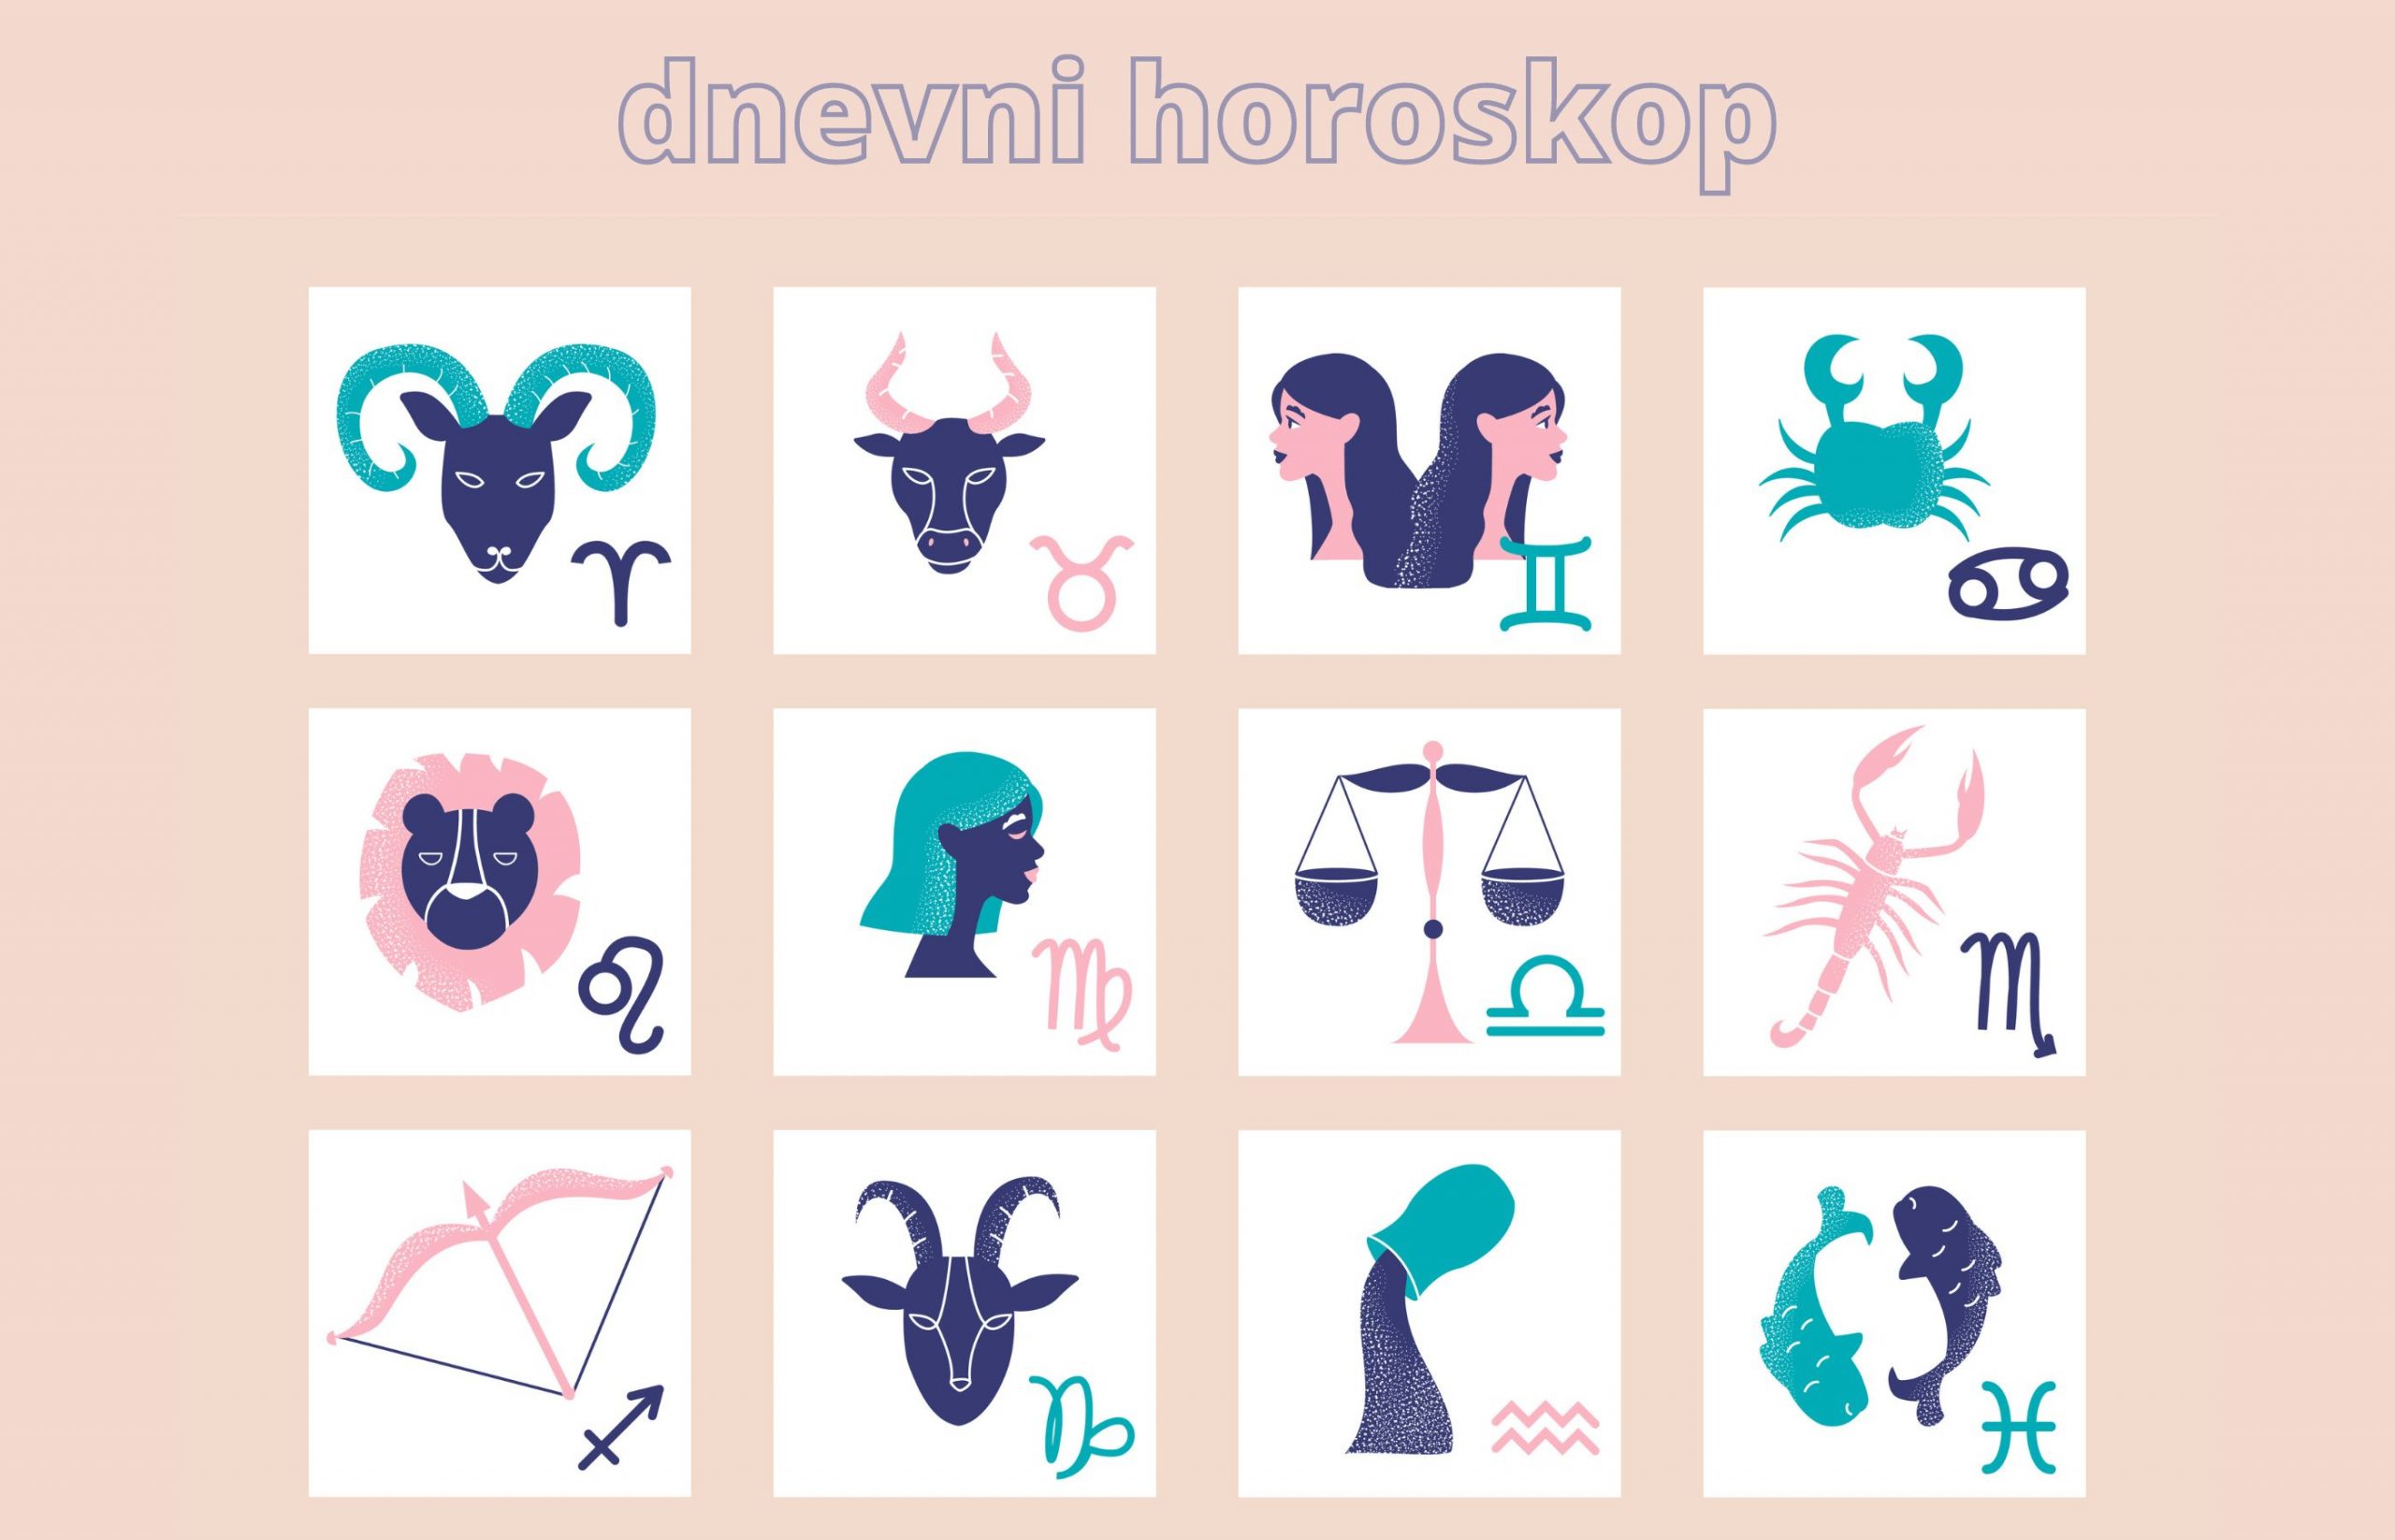 Jarac ljubavni horoskop